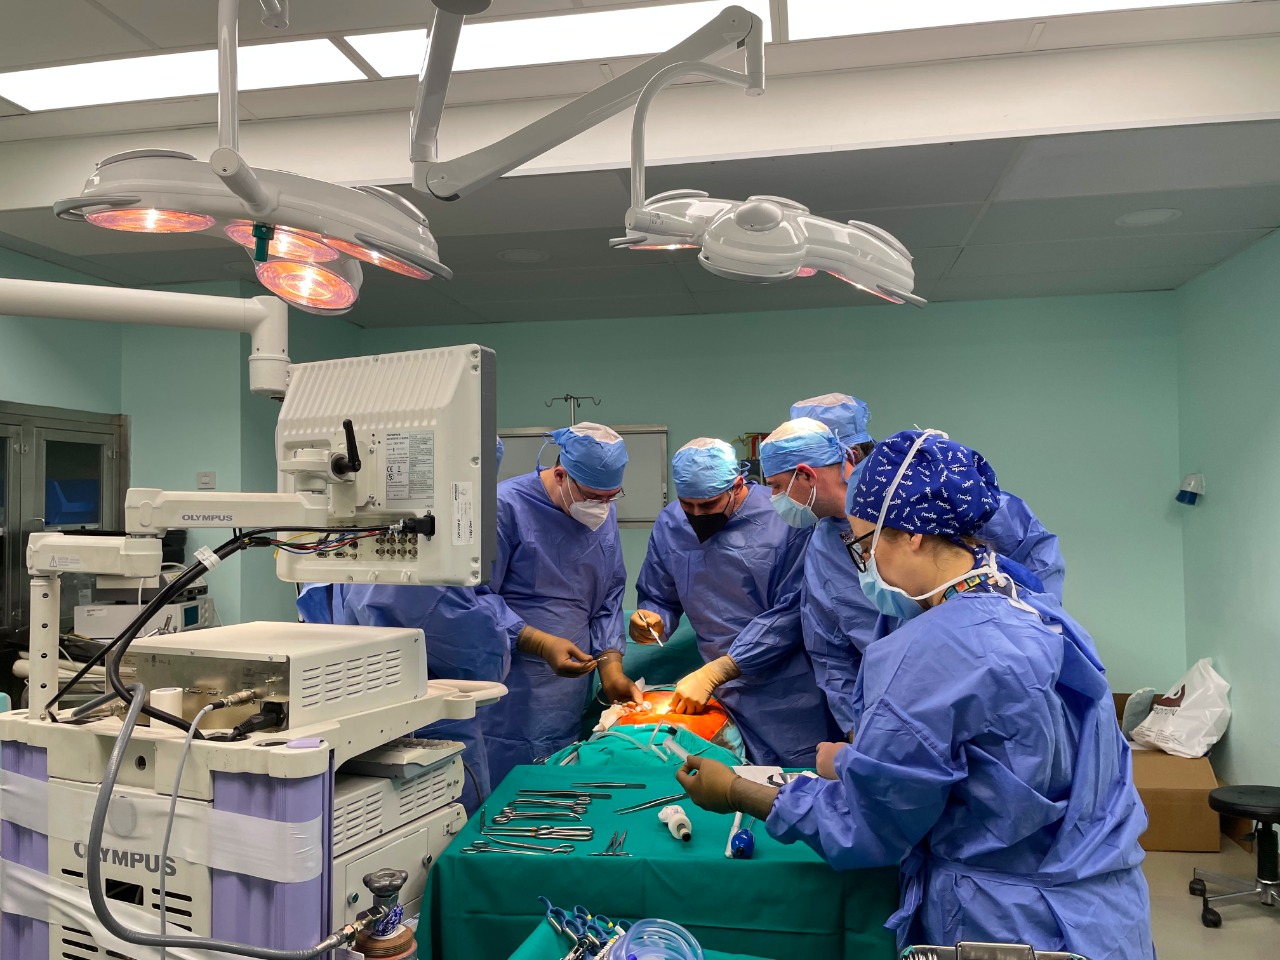 Ζωντανή αναμετάδοση χειρουργικής επέμβασης C.LA.SS Courses 2020 2nd Chapter